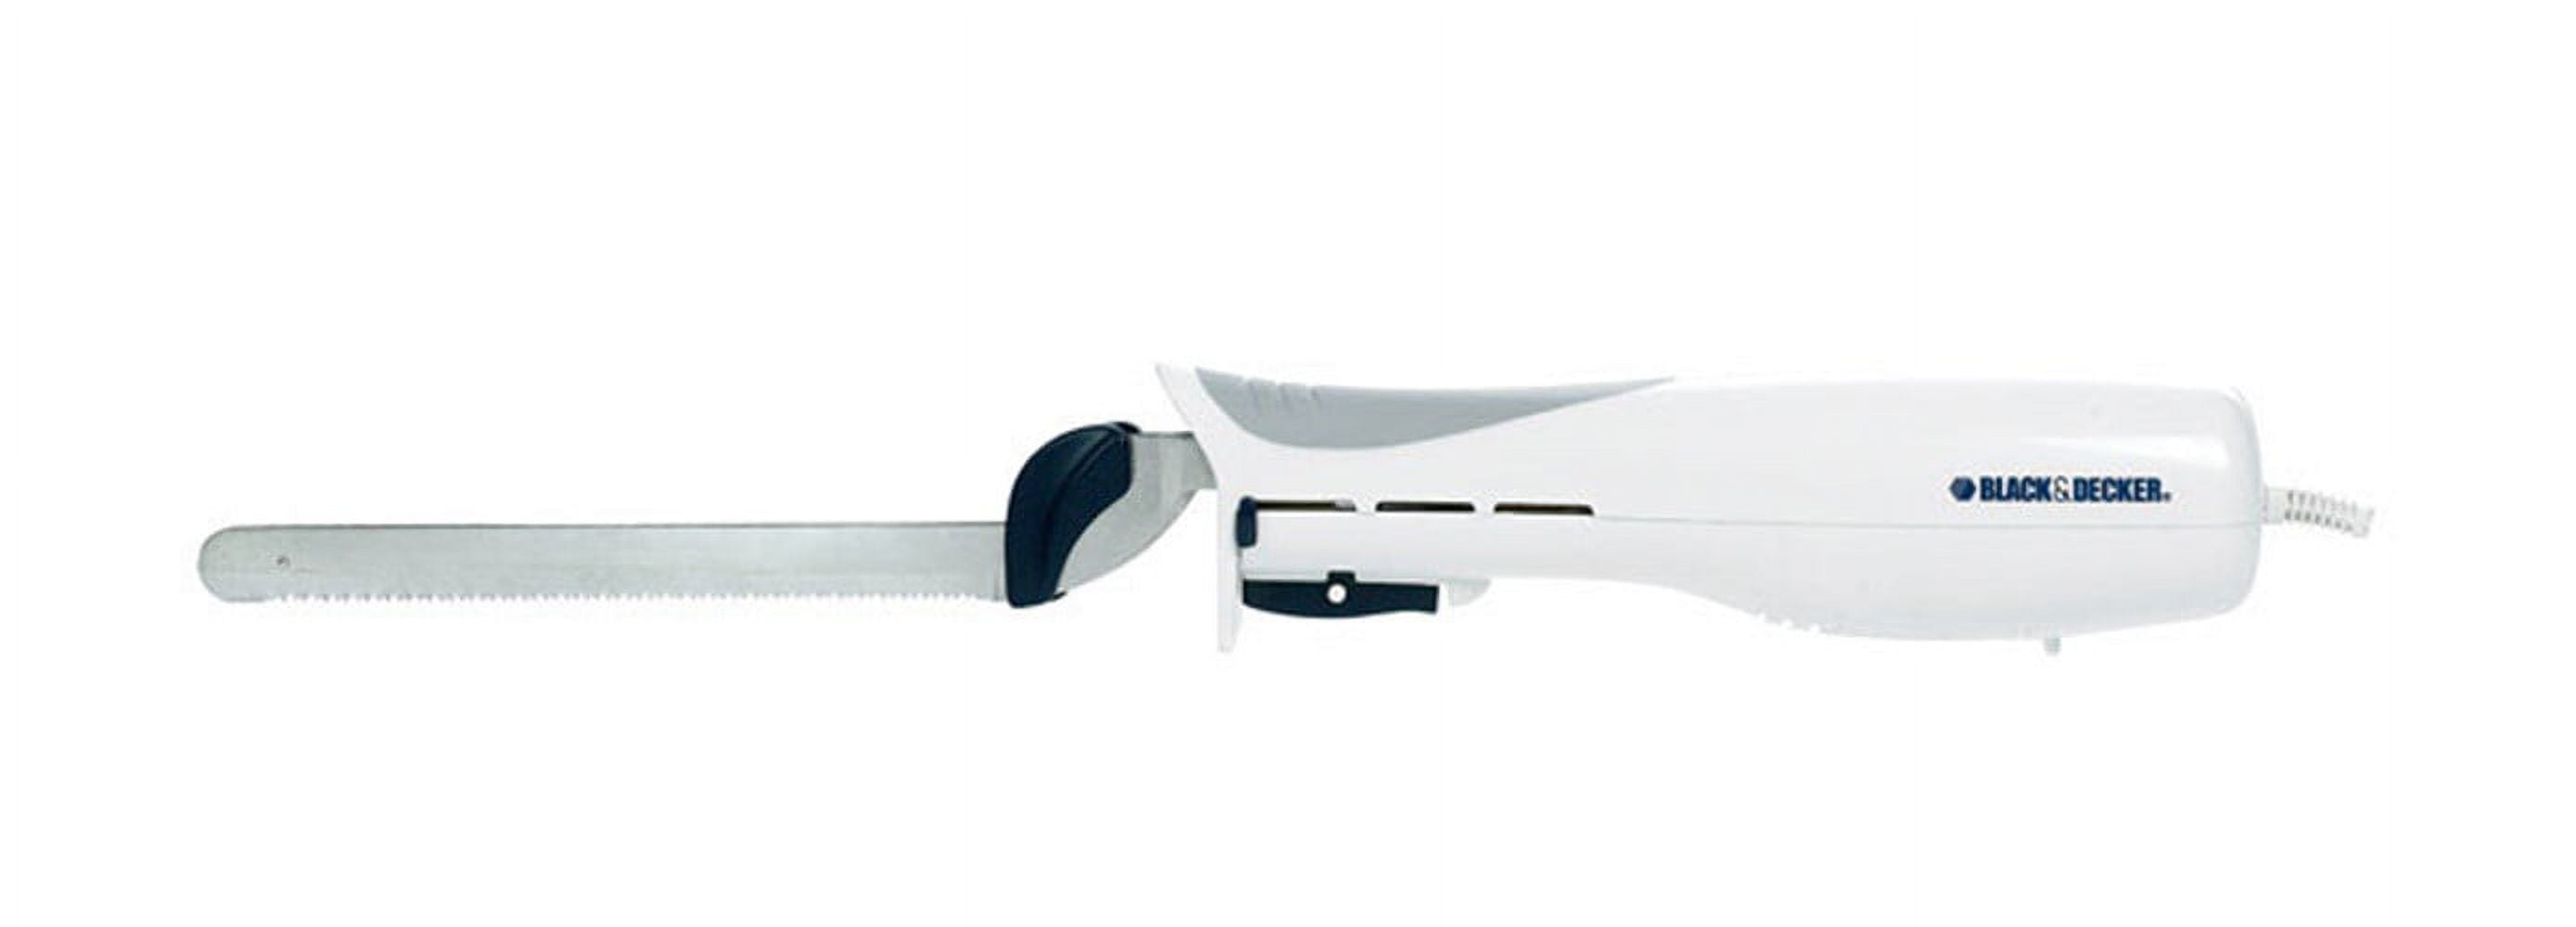 Buy the Slice Right Electric Knife, EK700